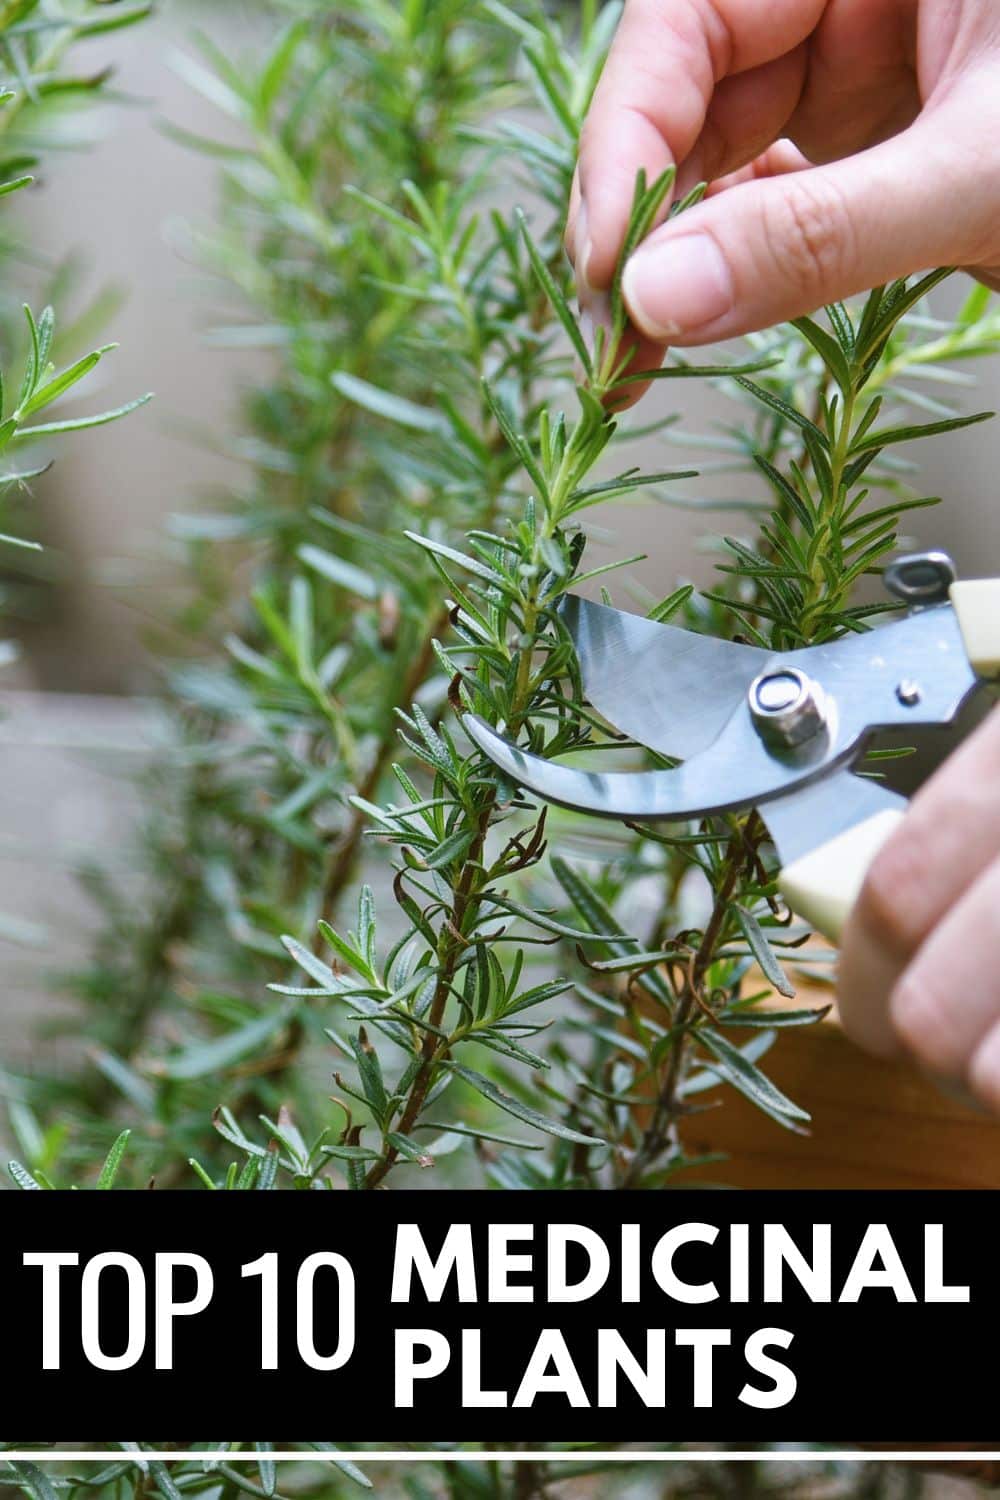 Top 10 Medicinal Plants